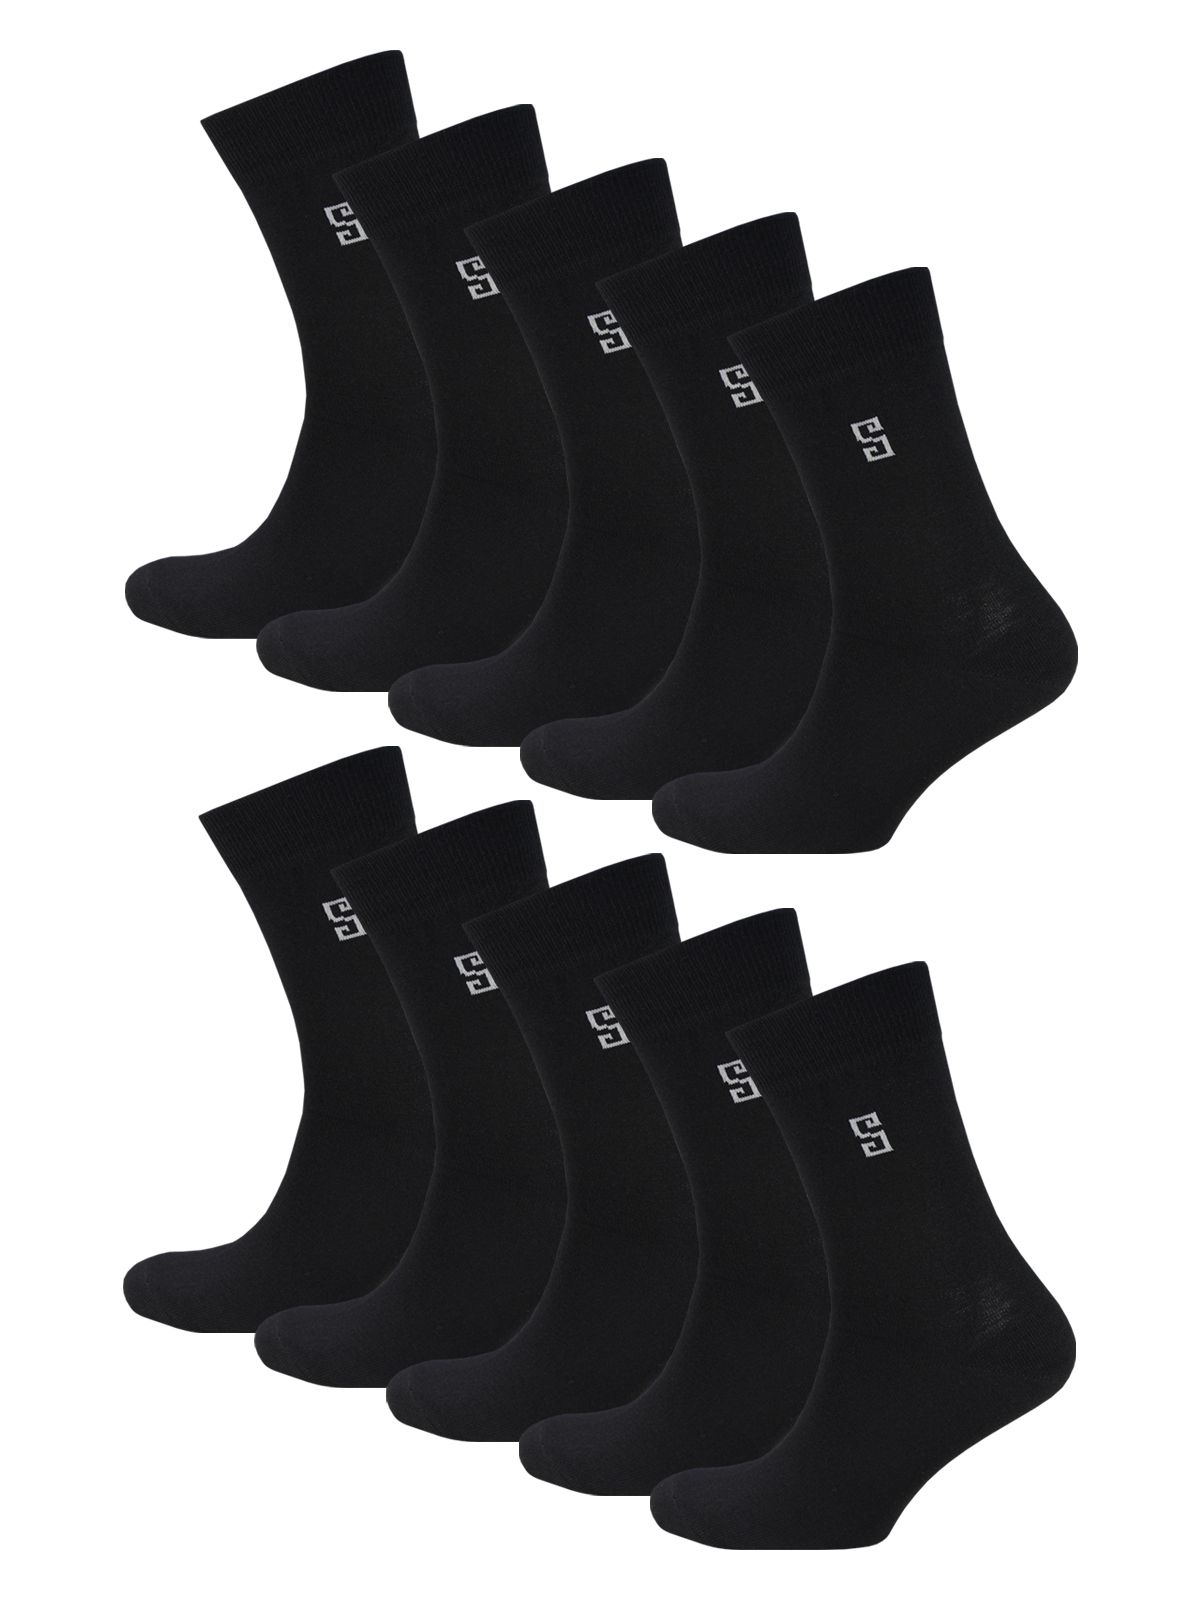 Комплект носков мужских Status Классические из хлопка 10 пар черных 31